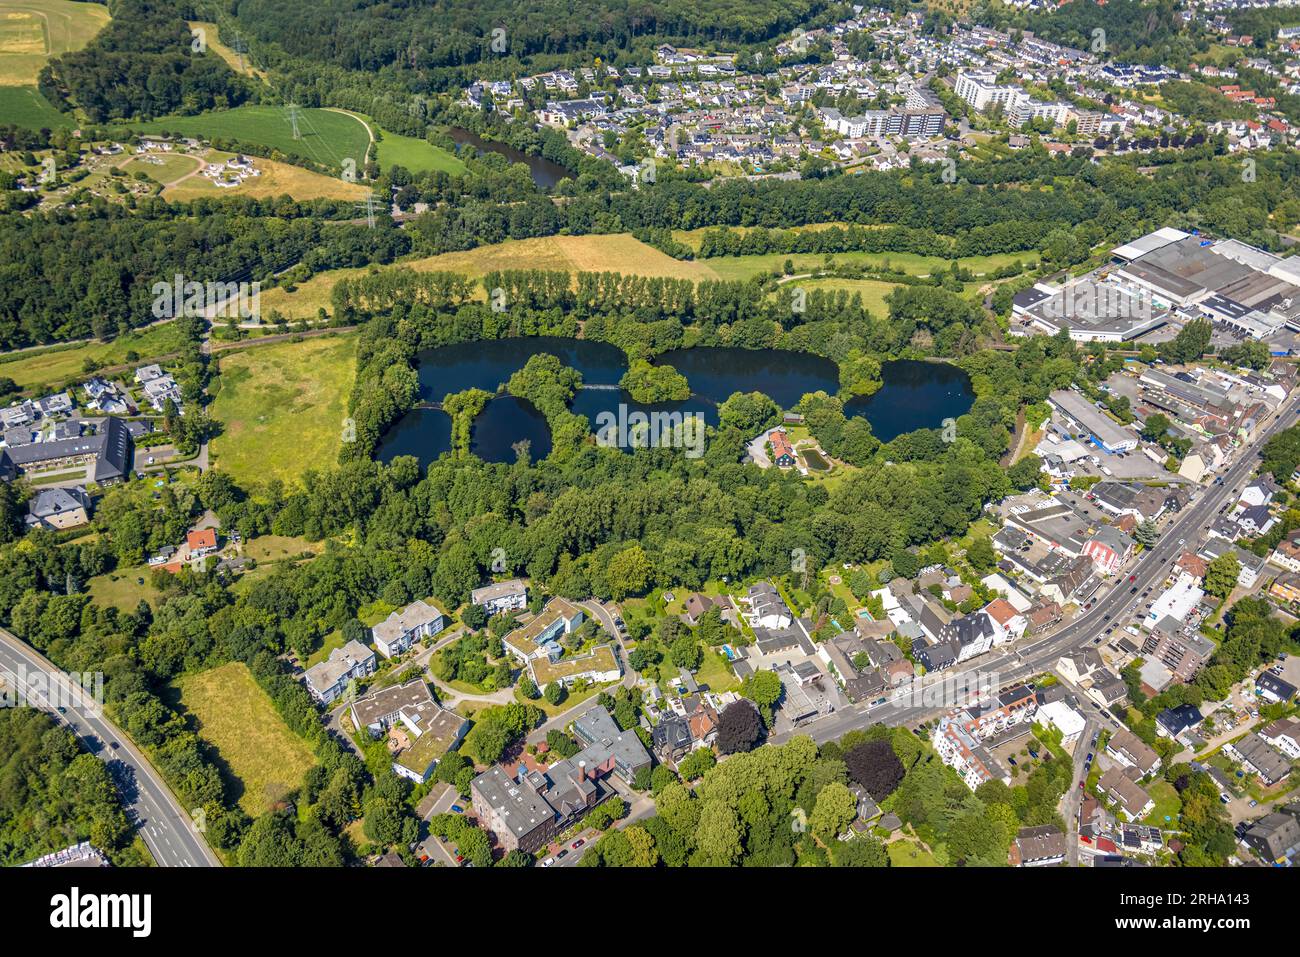 Aerial view, Schönungsteiche, Am Hammerteich, Berge, Gevelsberg, Ruhr area, North Rhine-Westphalia, Germany, Schönungsteiche, DE, Europe, Aerial photo Stock Photo